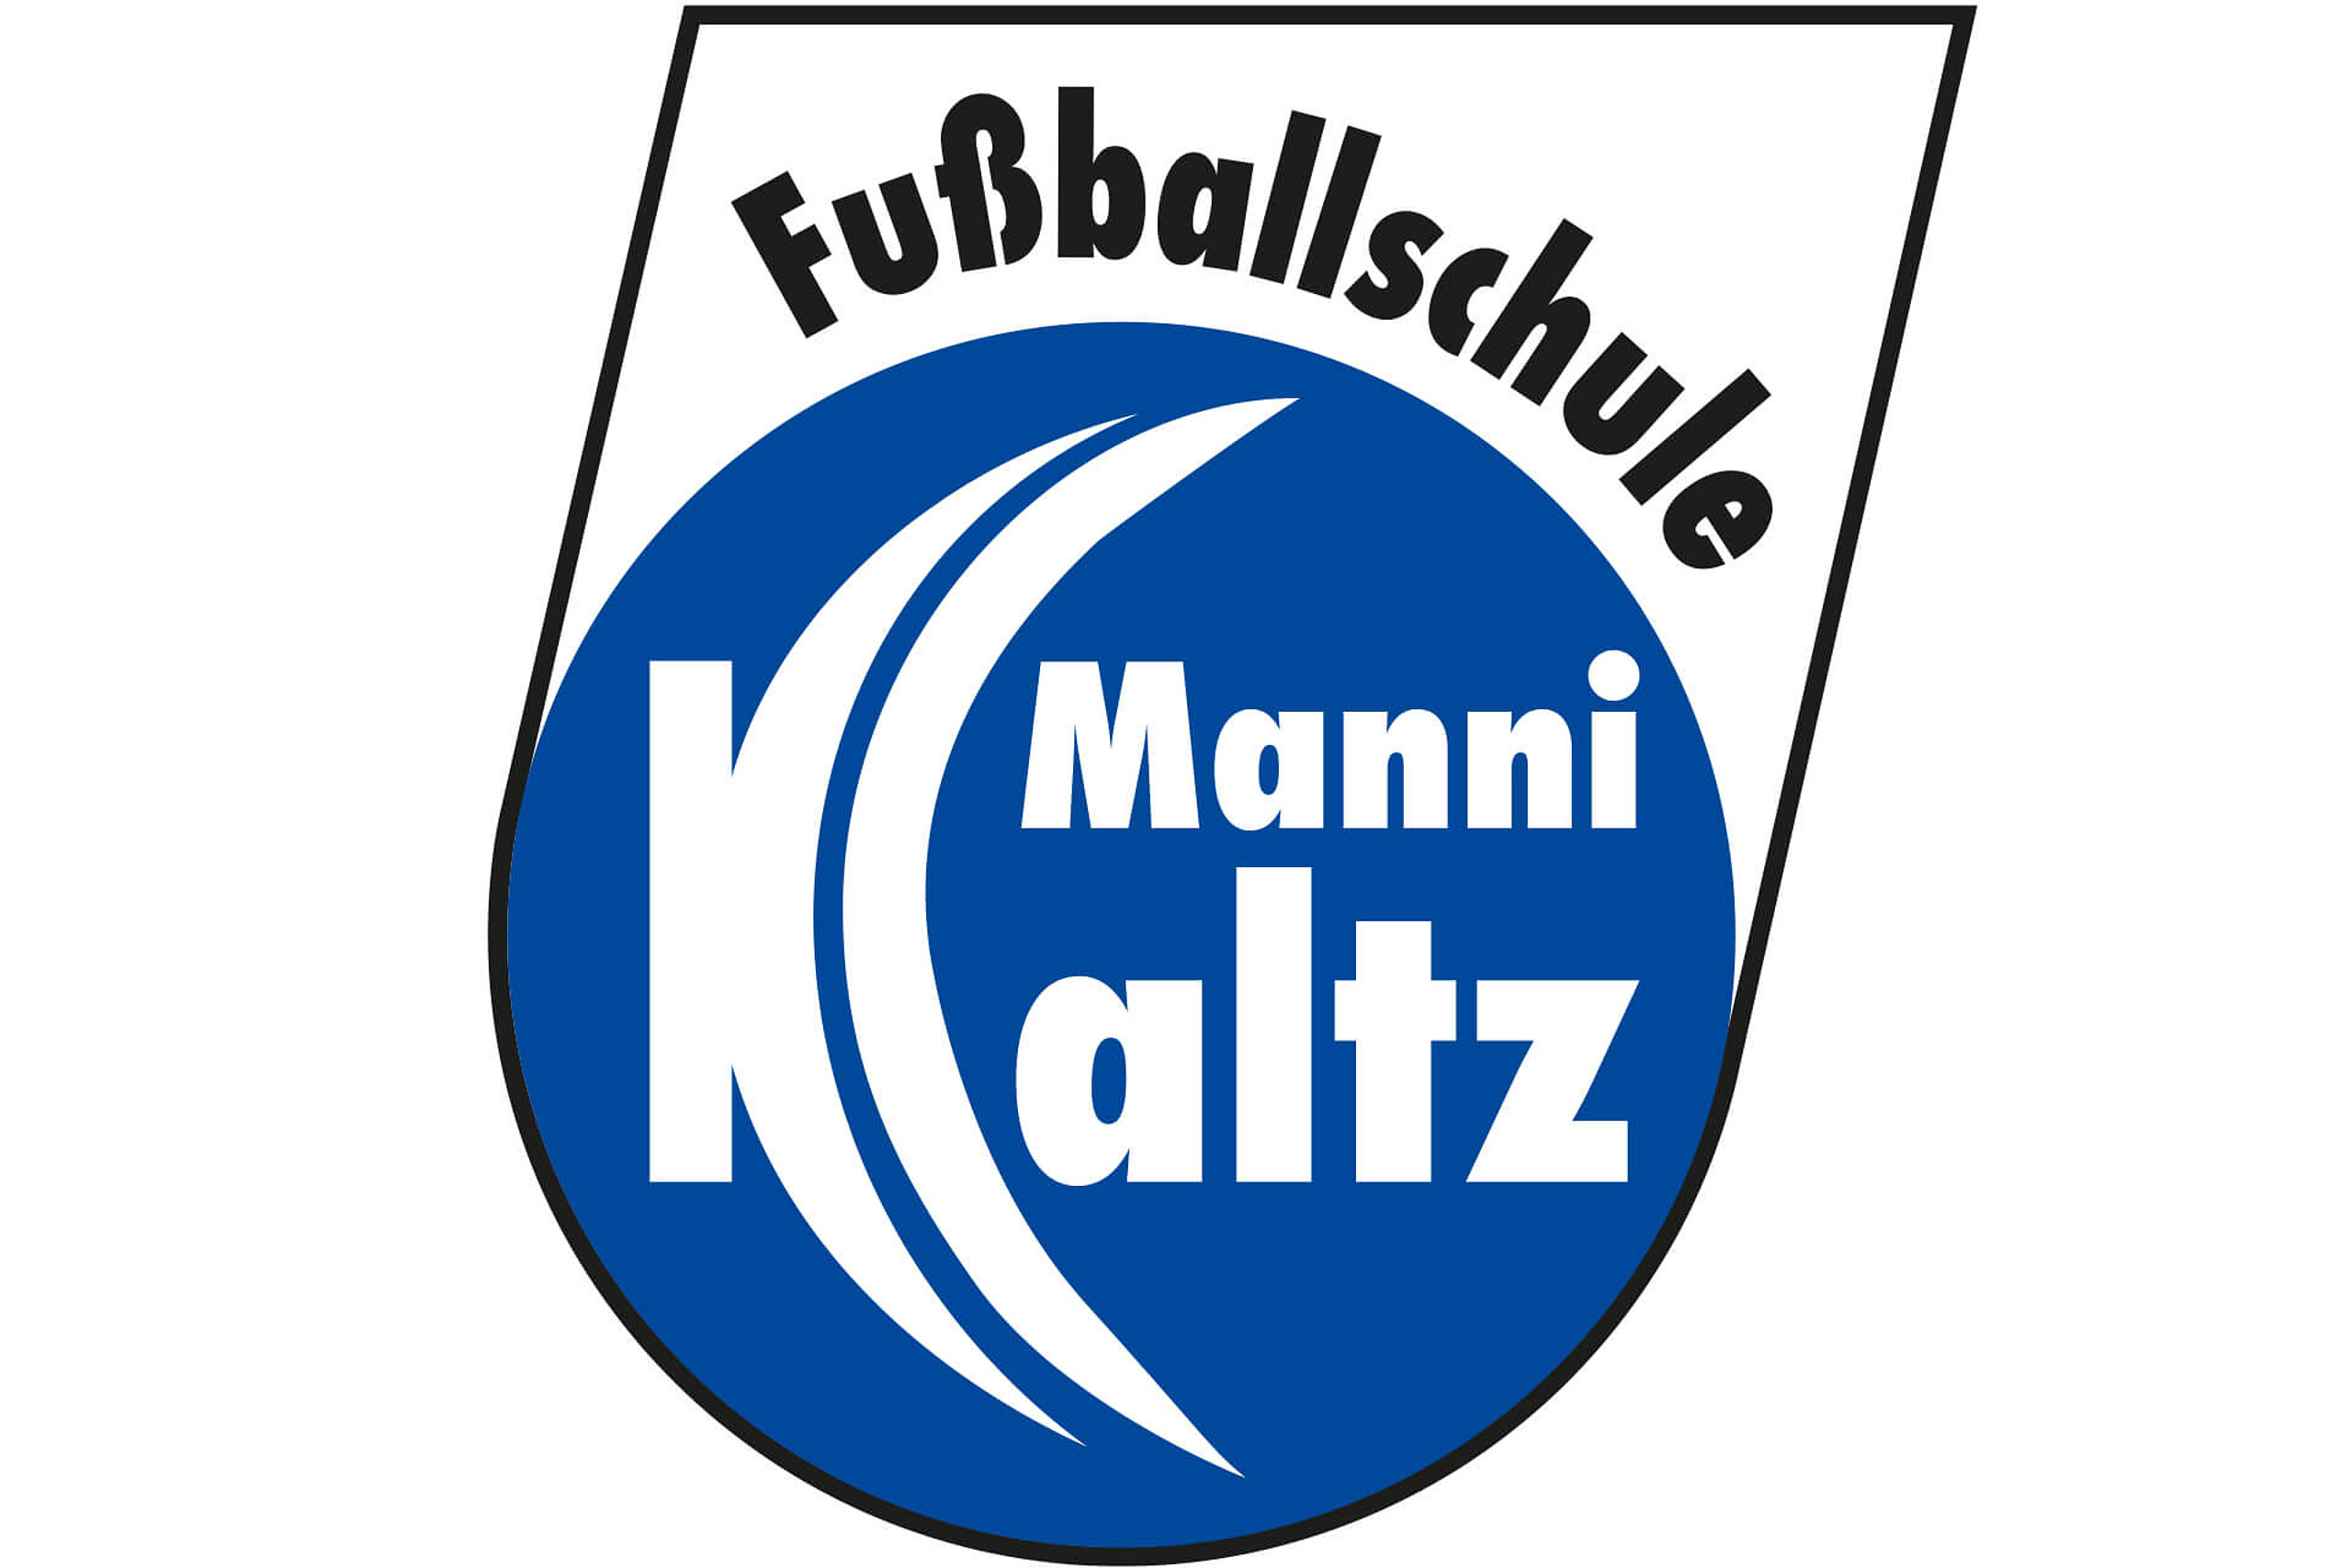 Weissenhäuser Strand Partner Fußballschule Manni Kaltz